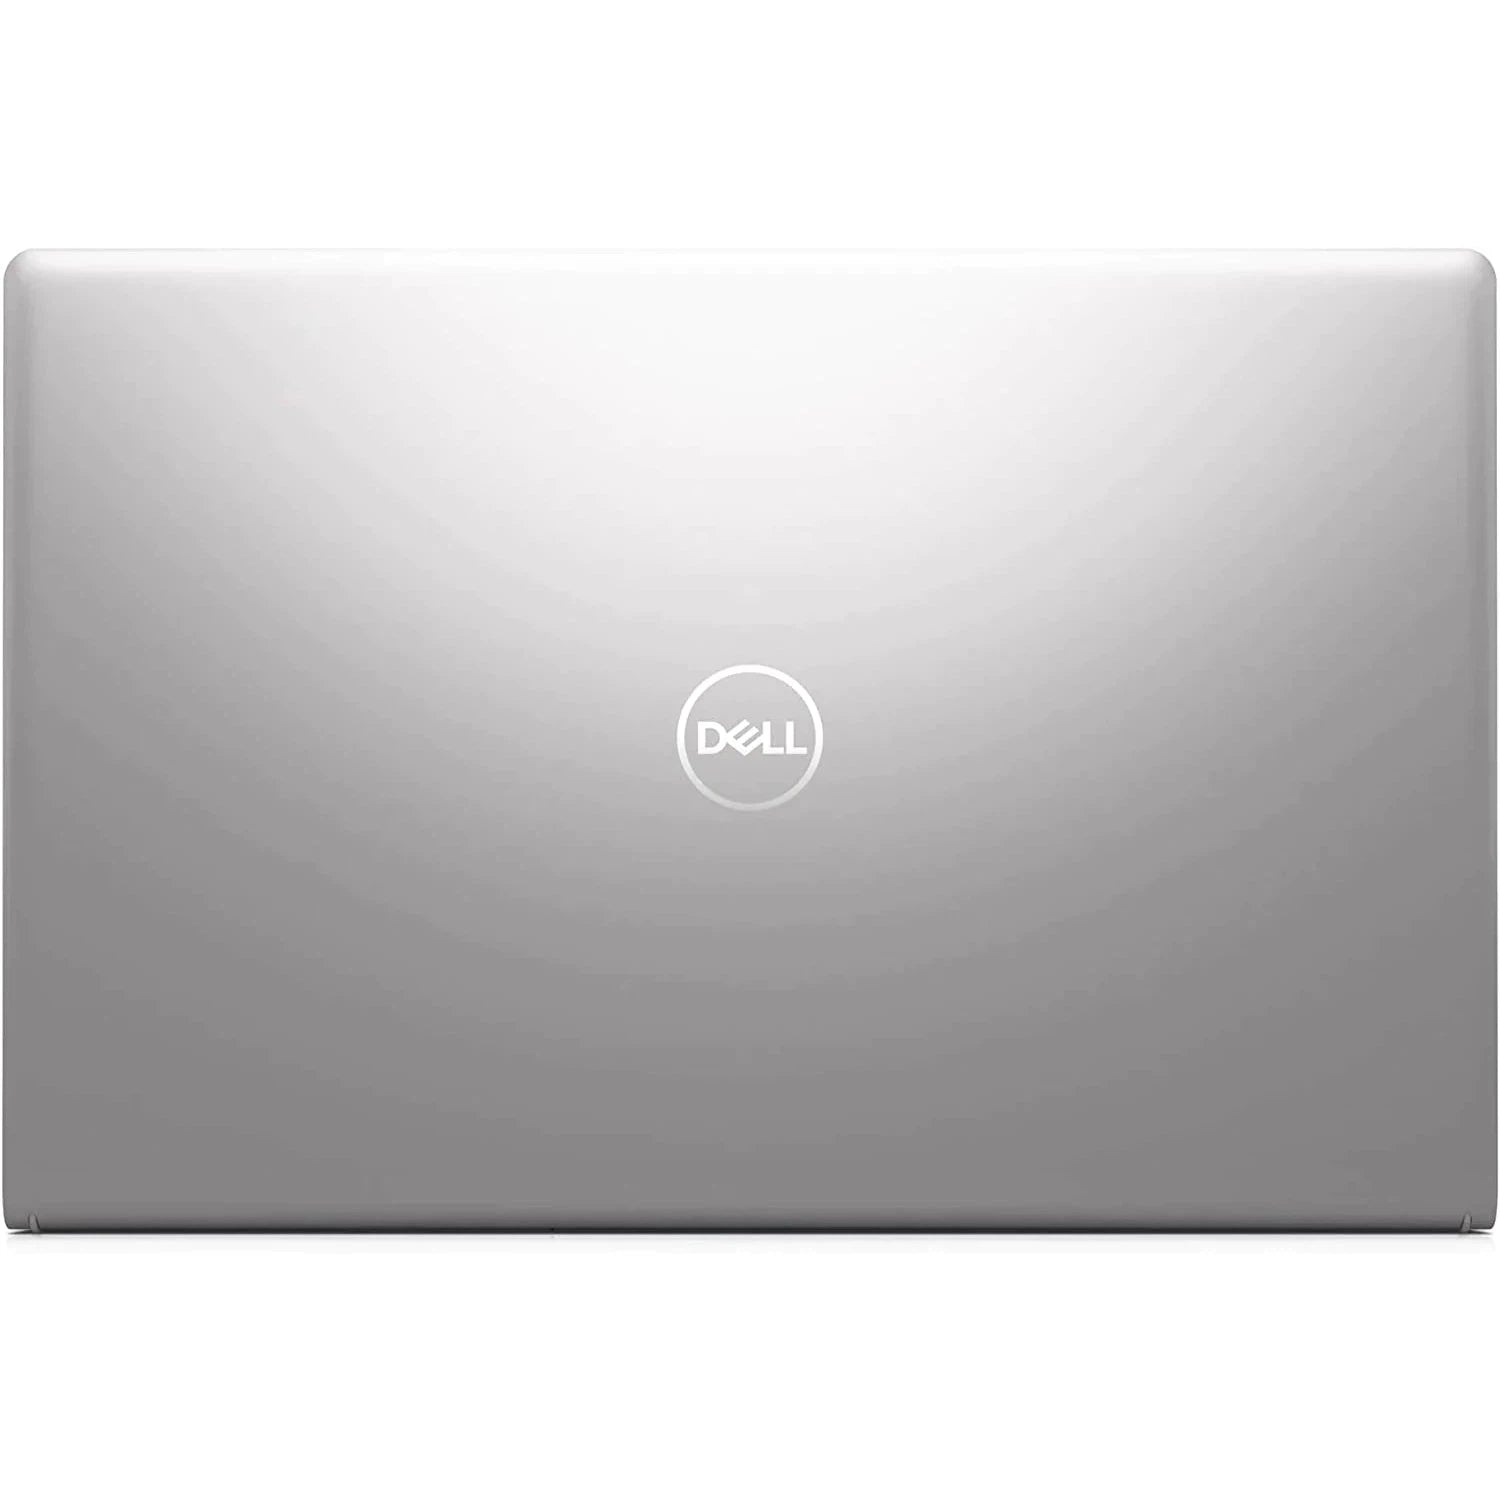 Dell Inspiron 15 3511 Intel Core i5 8GB RAM 256GB SSD 15.6" - Silver